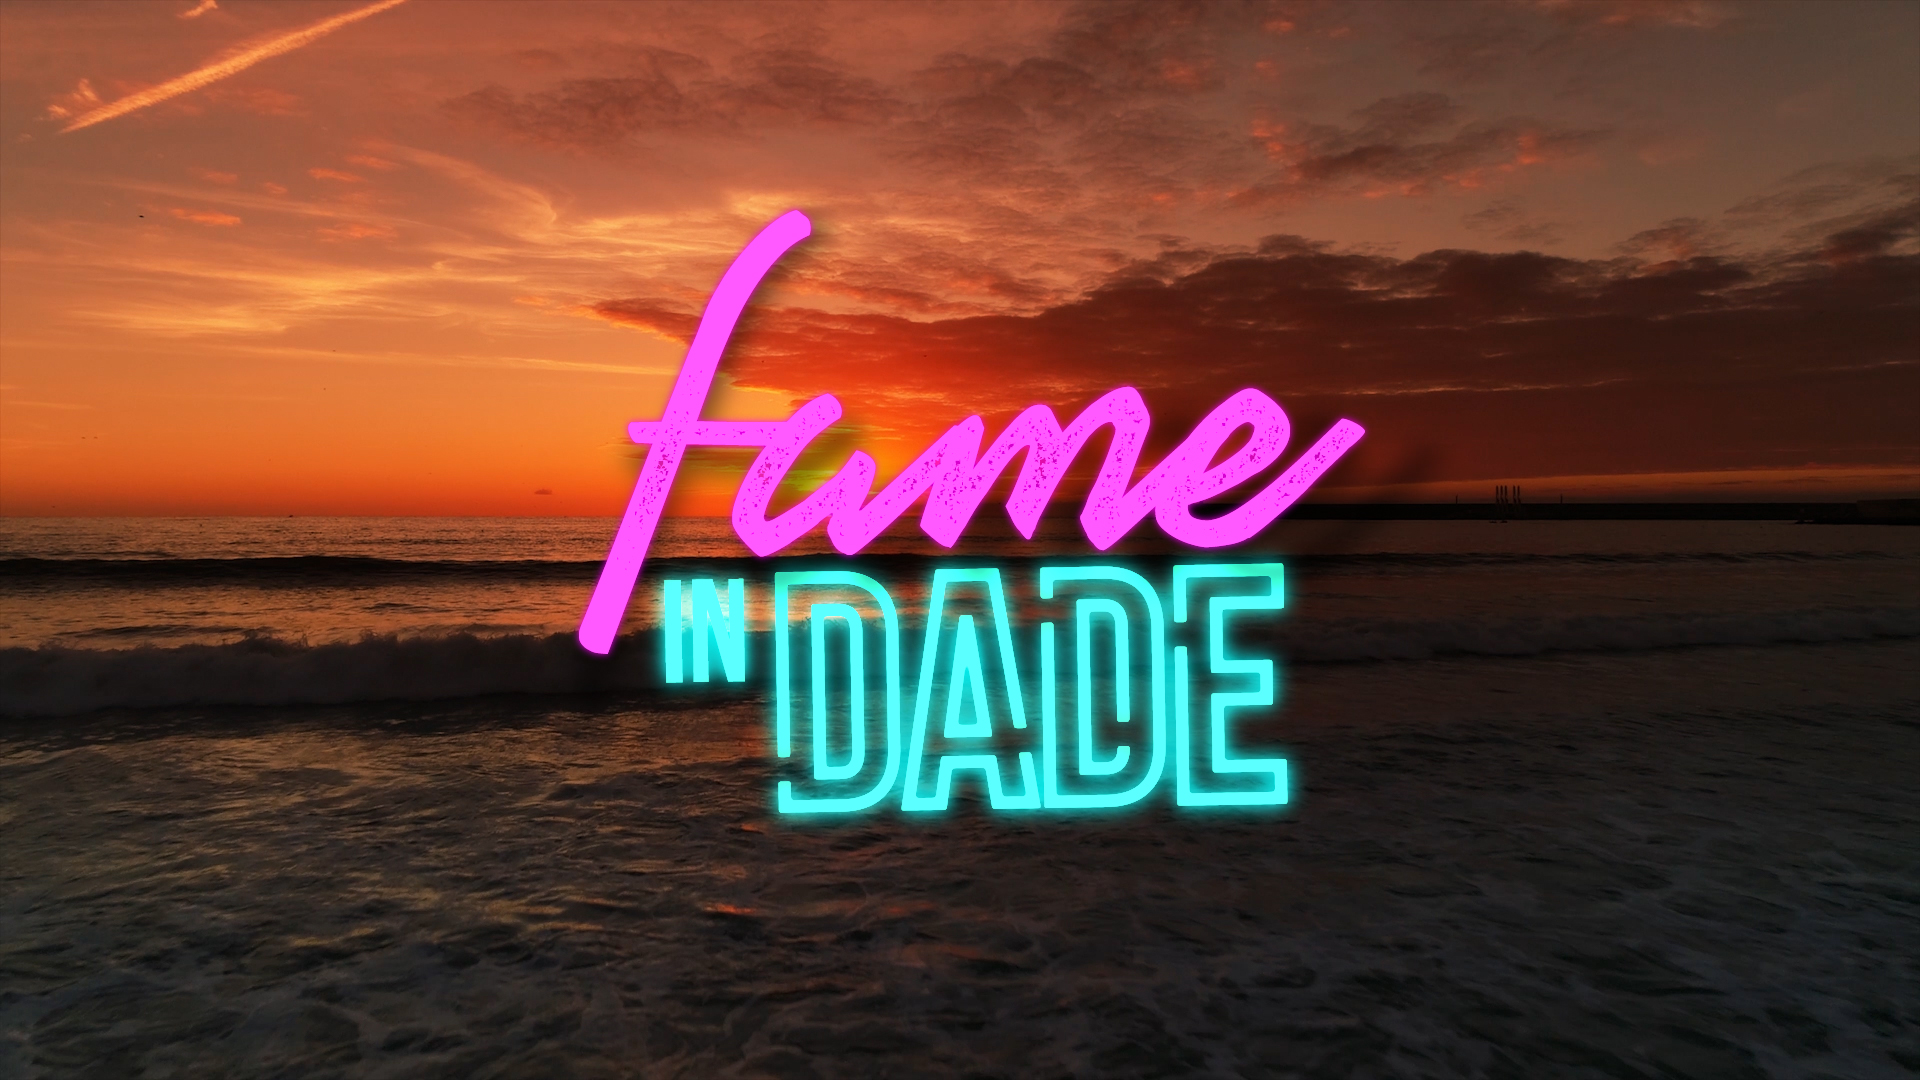 Fame In Dade